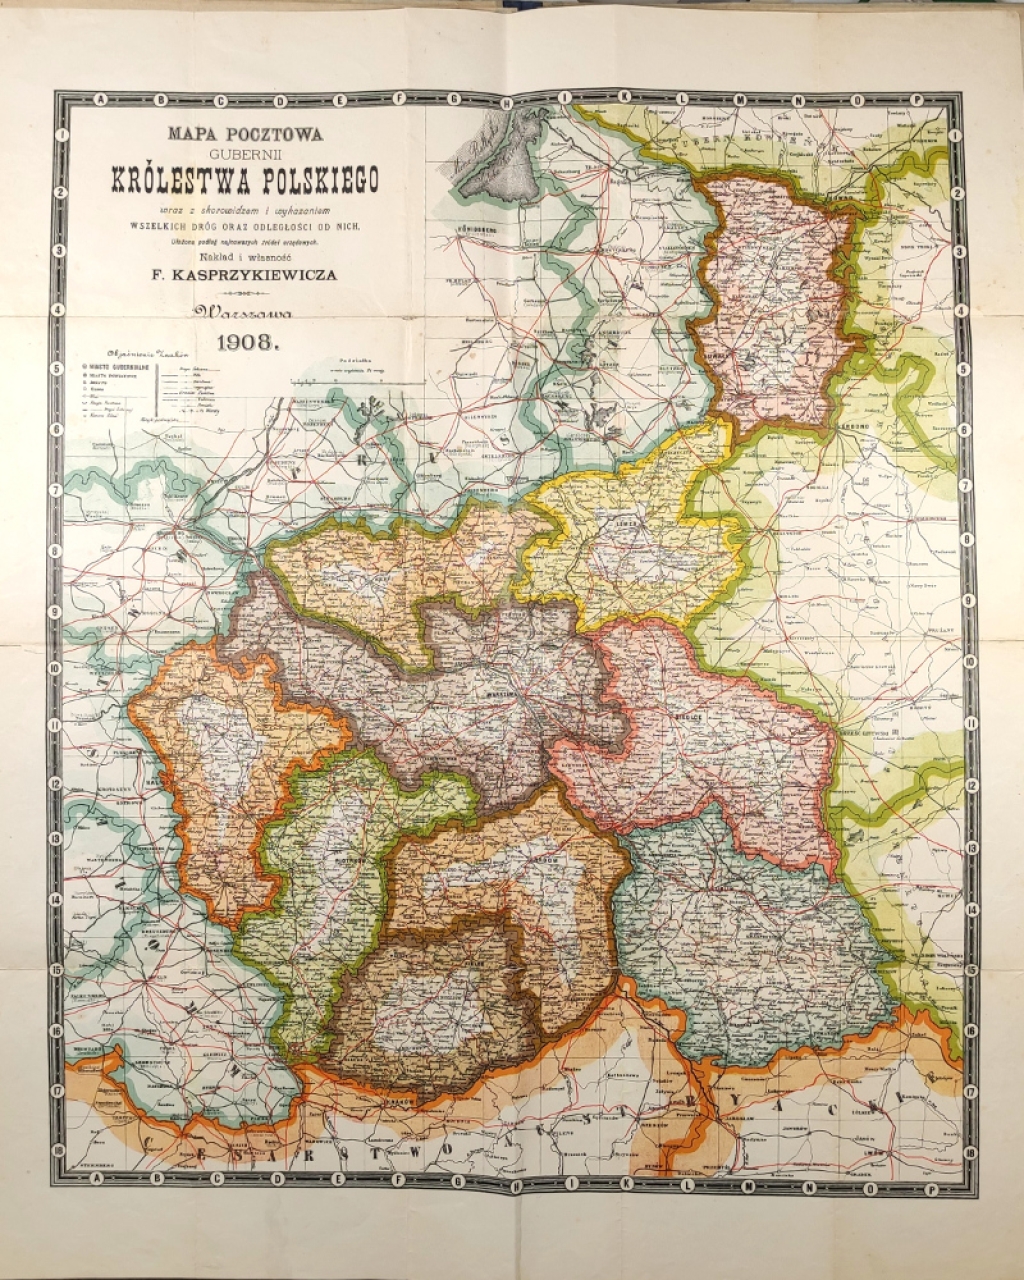 Mapa pocztowa gubernii Królestwa Polskiego wraz z skorowidzem i wykazem wszelkich dróg oraz odległości od nich. Ułożona podług najnowszych źródeł urzędowych (1908)